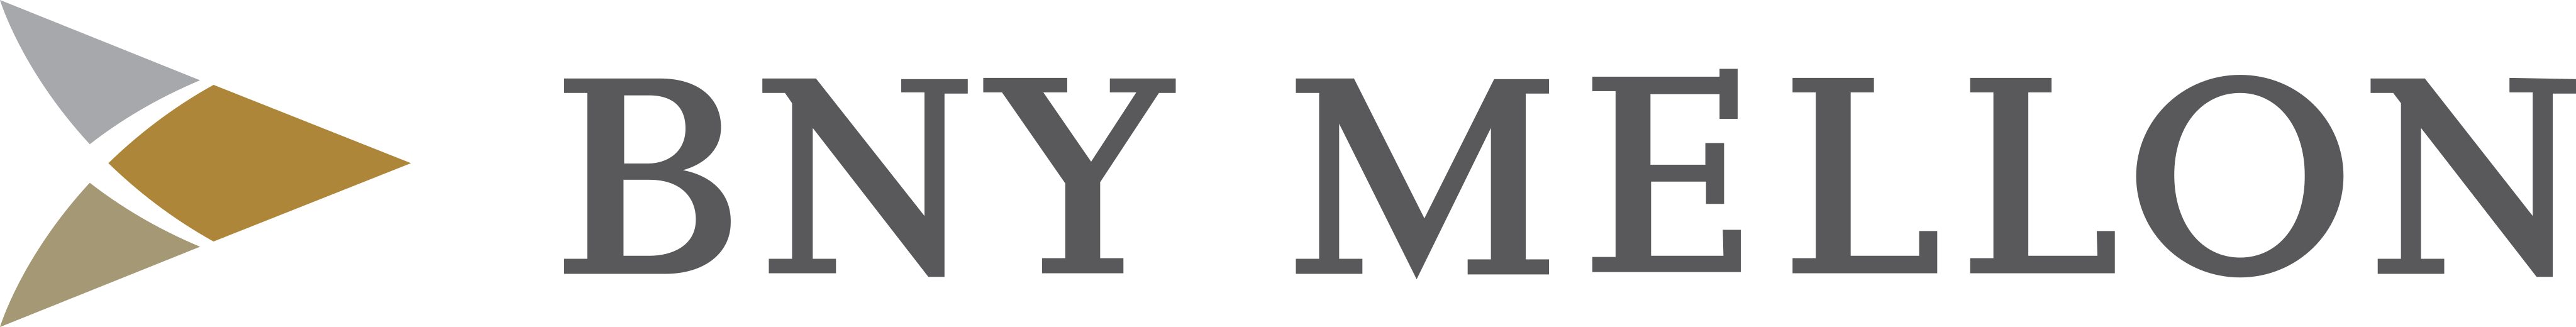 BNY Mellon Logo.